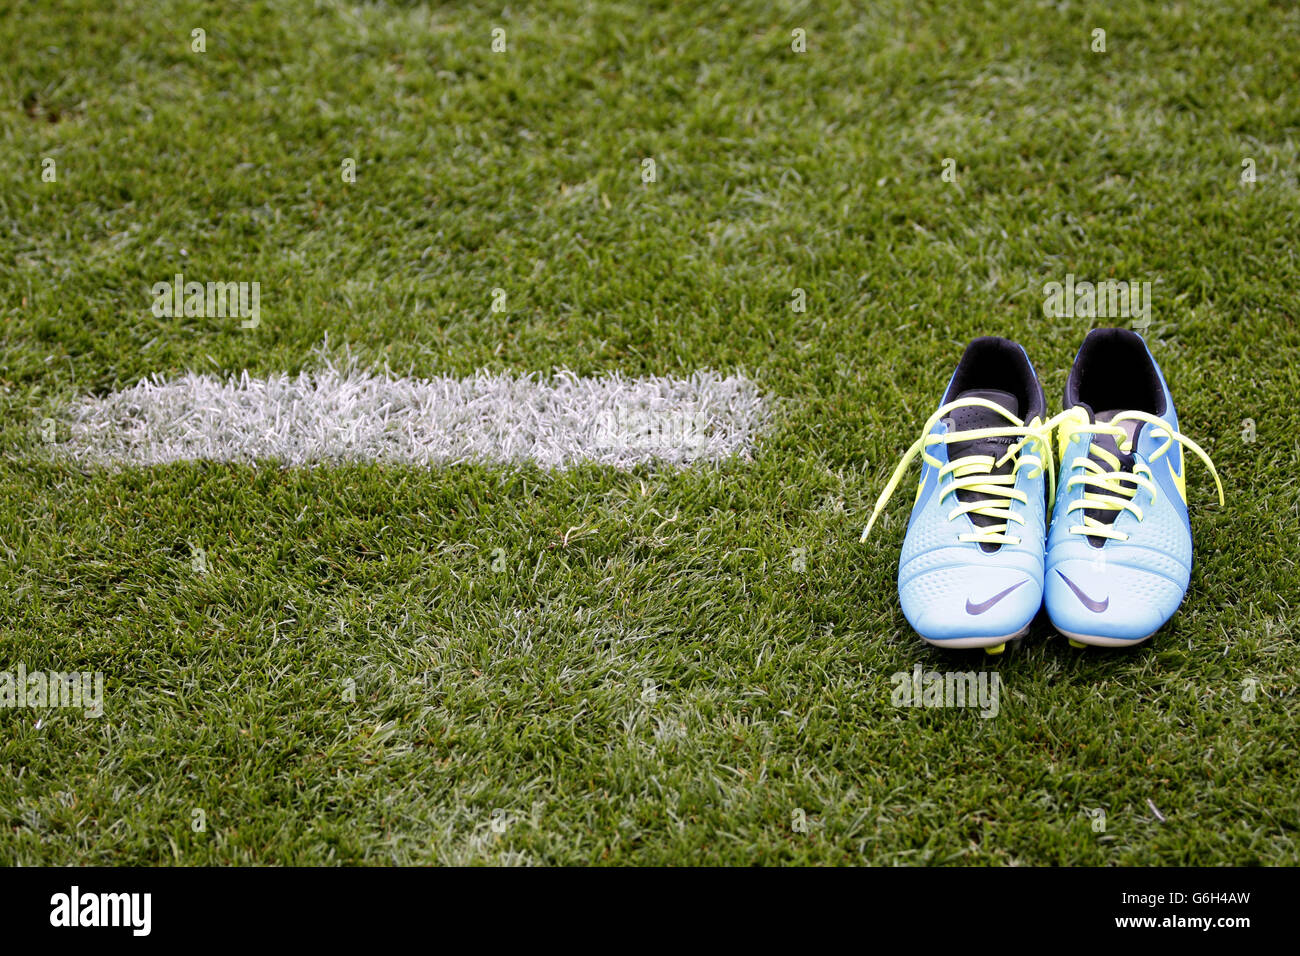 Scarpe Da Calcio In Campo Immagini e Fotos Stock - Alamy